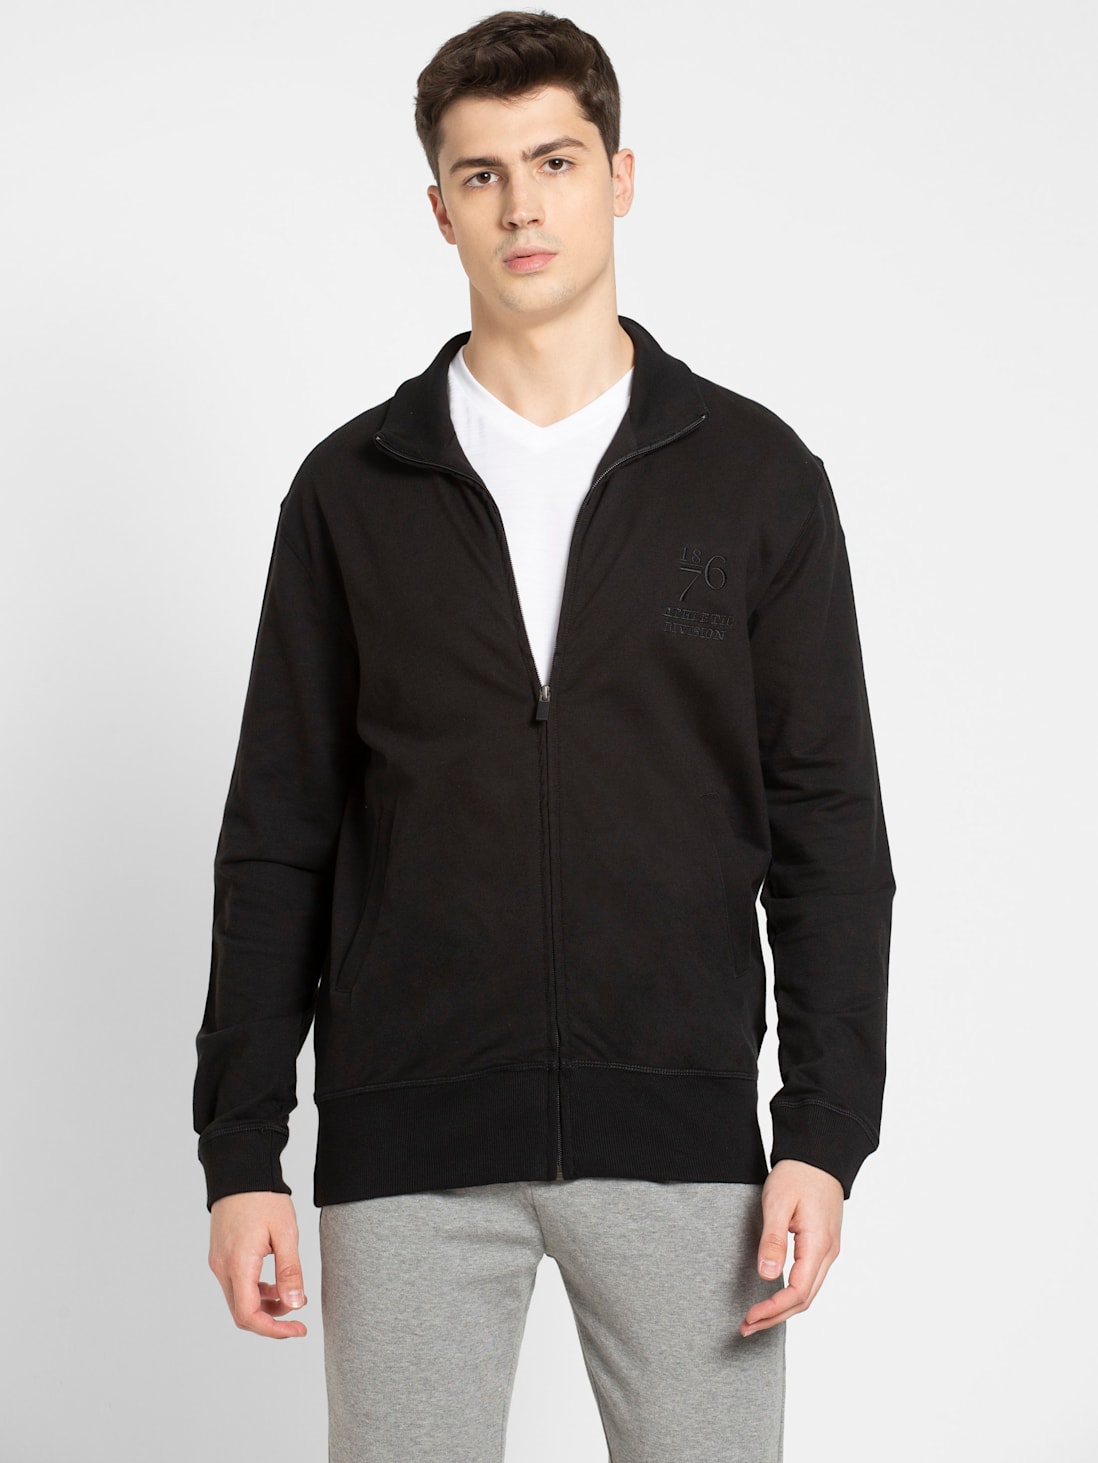 Buy Van Heusen Black Jacket Online - 782211 | Van Heusen